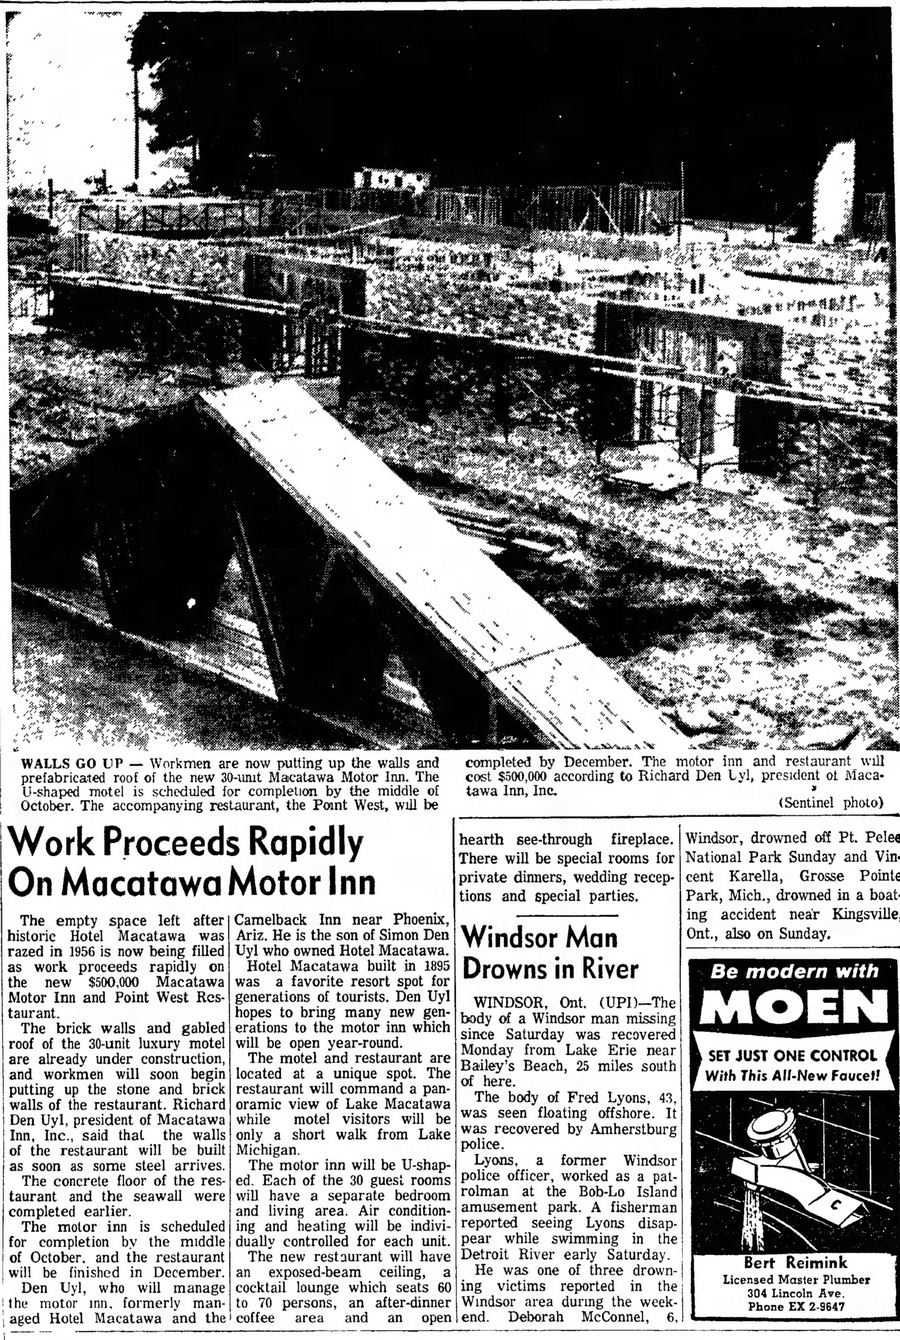 Macatawa Inn - Jul 28 1964 Construction